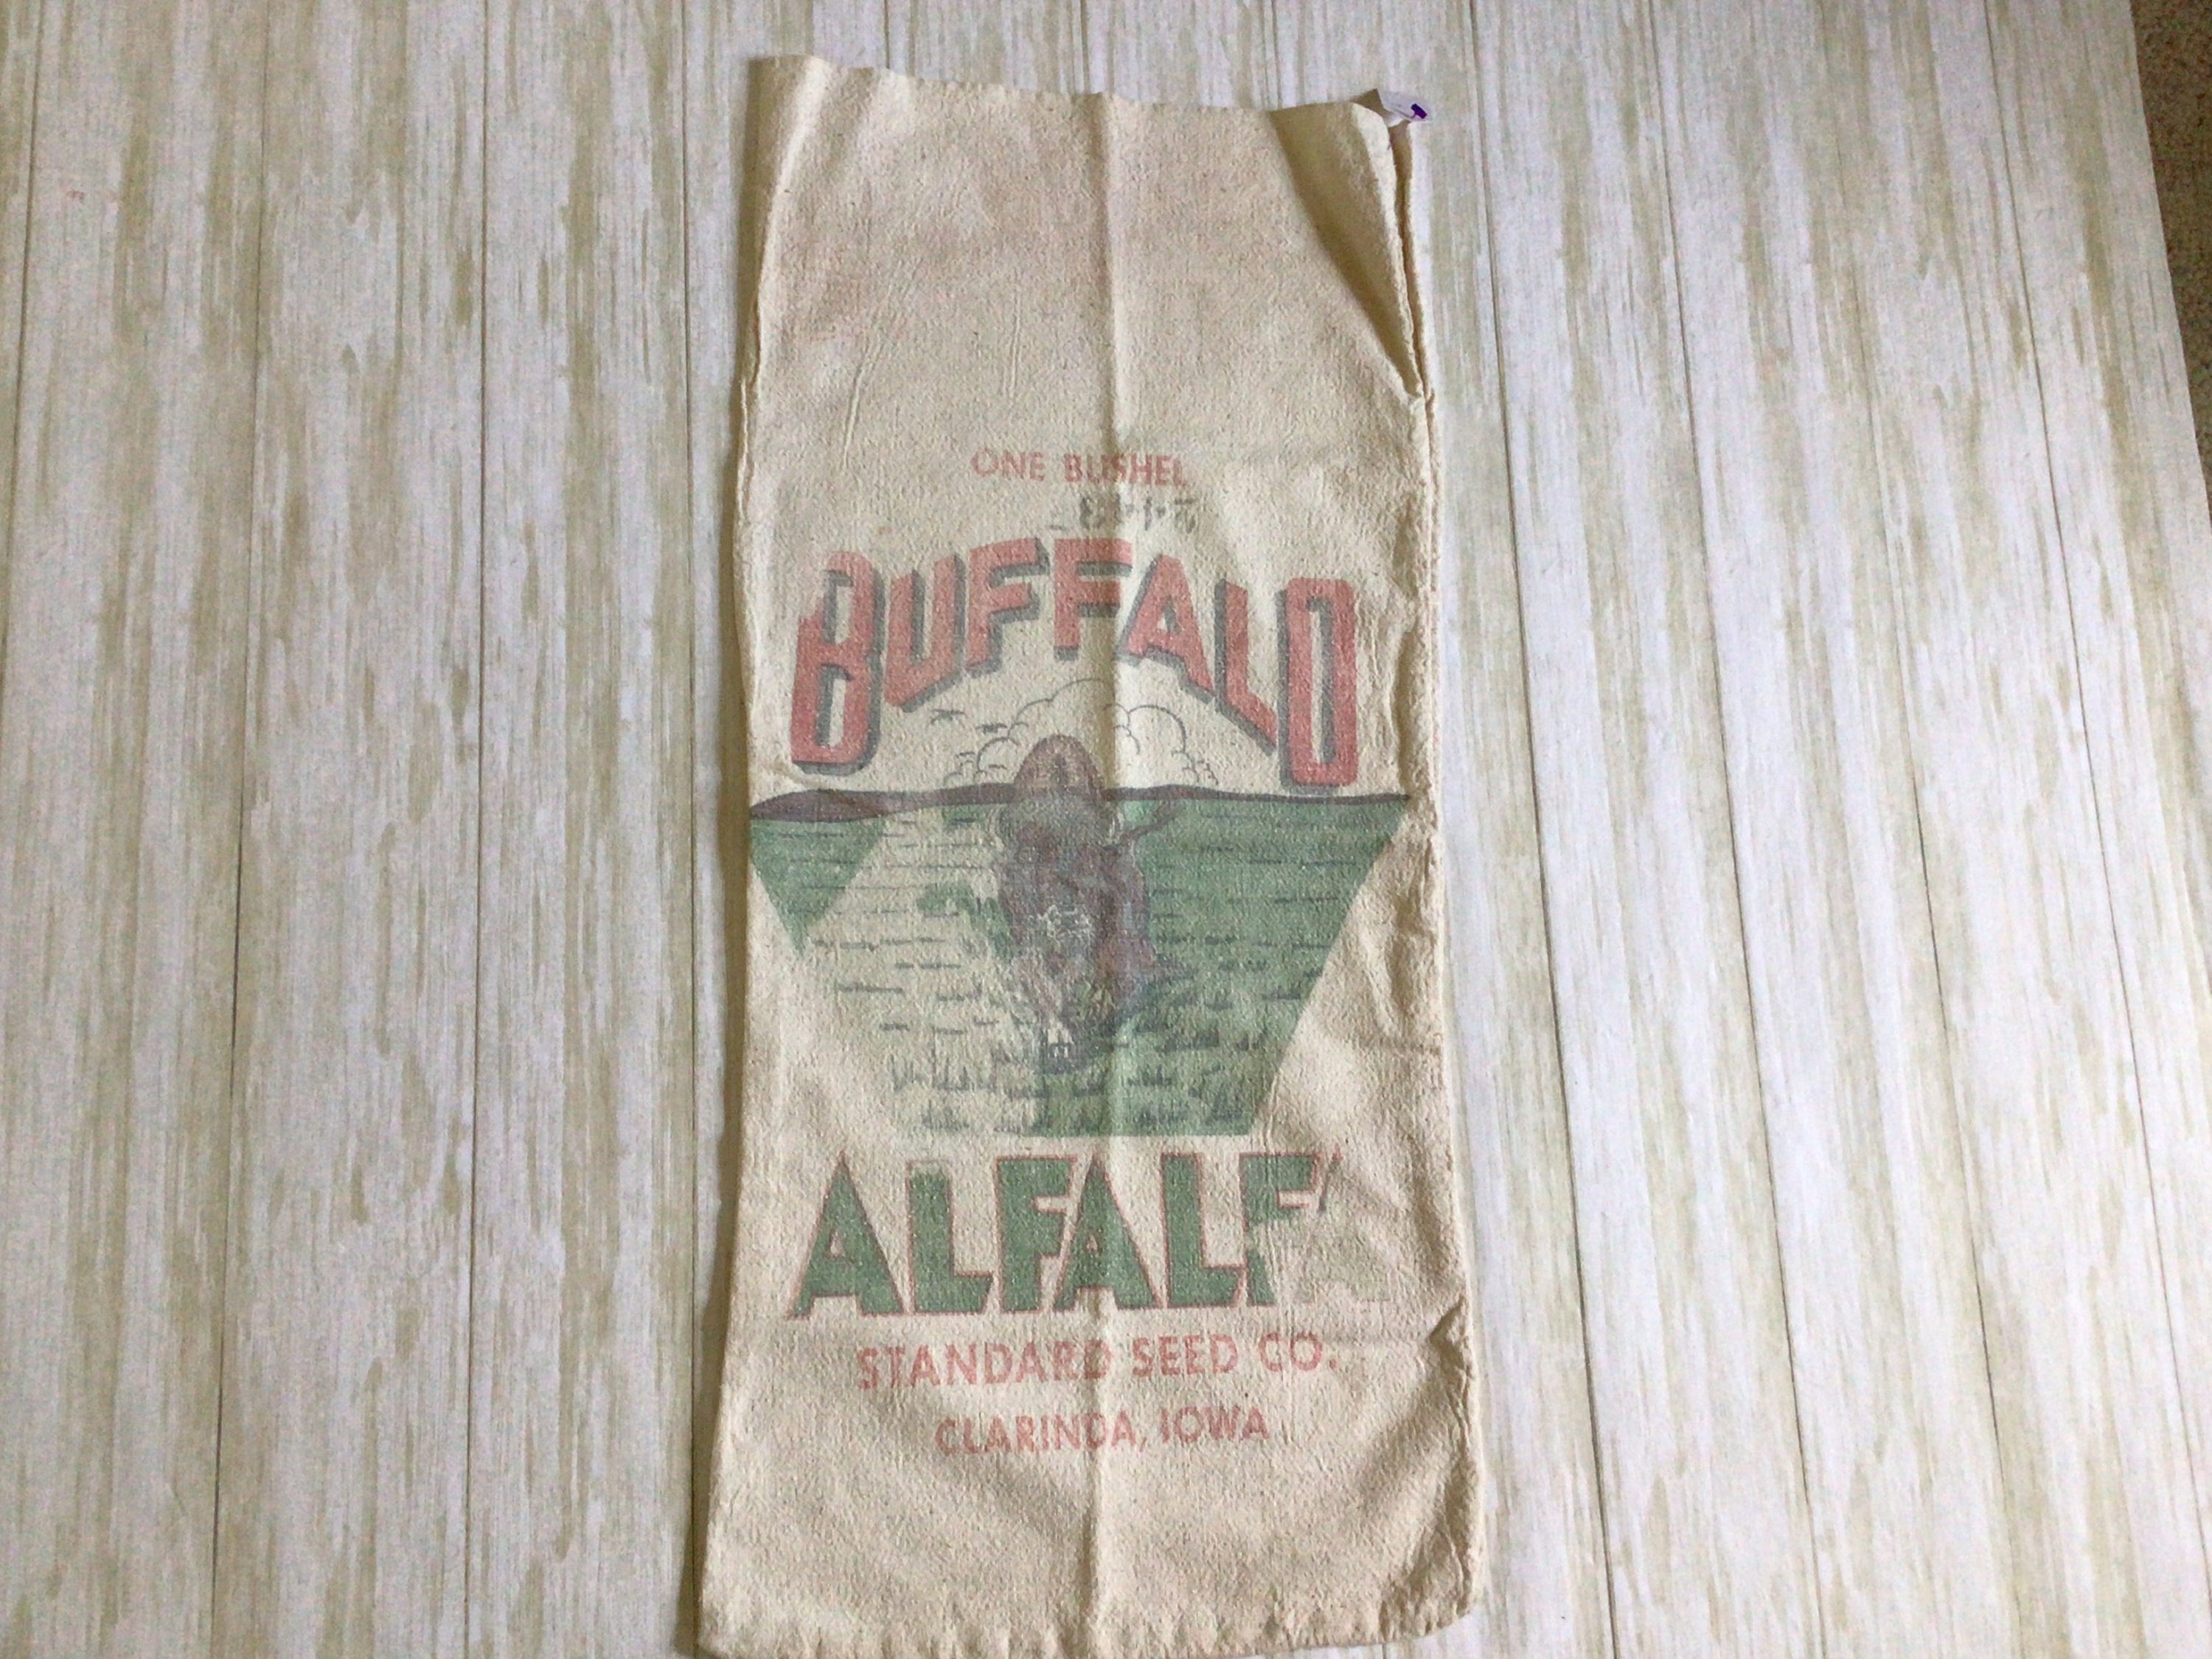 16-Oz. Bag of Alfalfa Hay – Alfalfa King